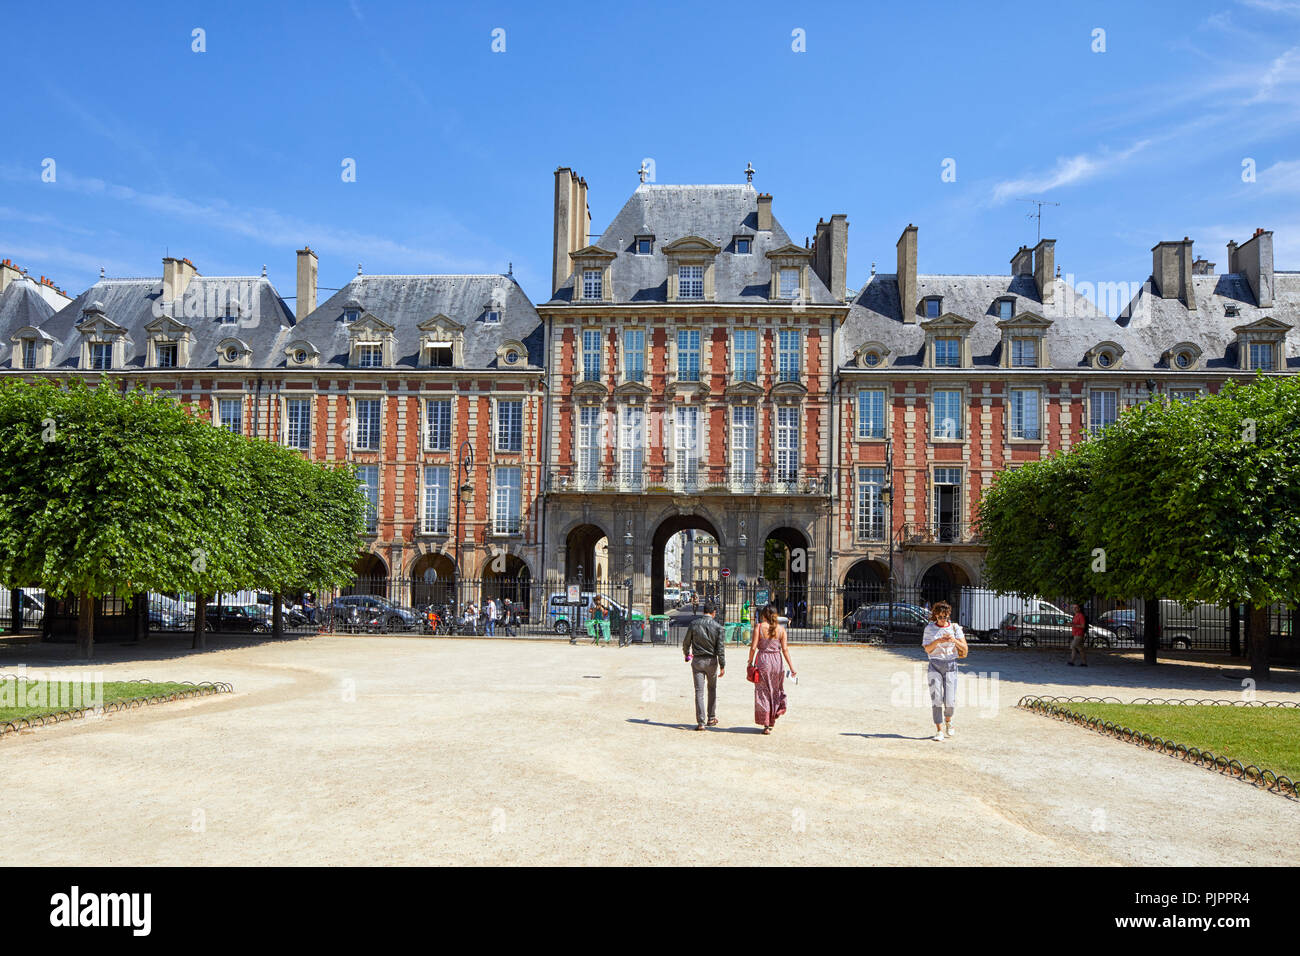 Pavillon de la Reine in Place des Vosges, Paris, Le Marais, Europe Stock Photo